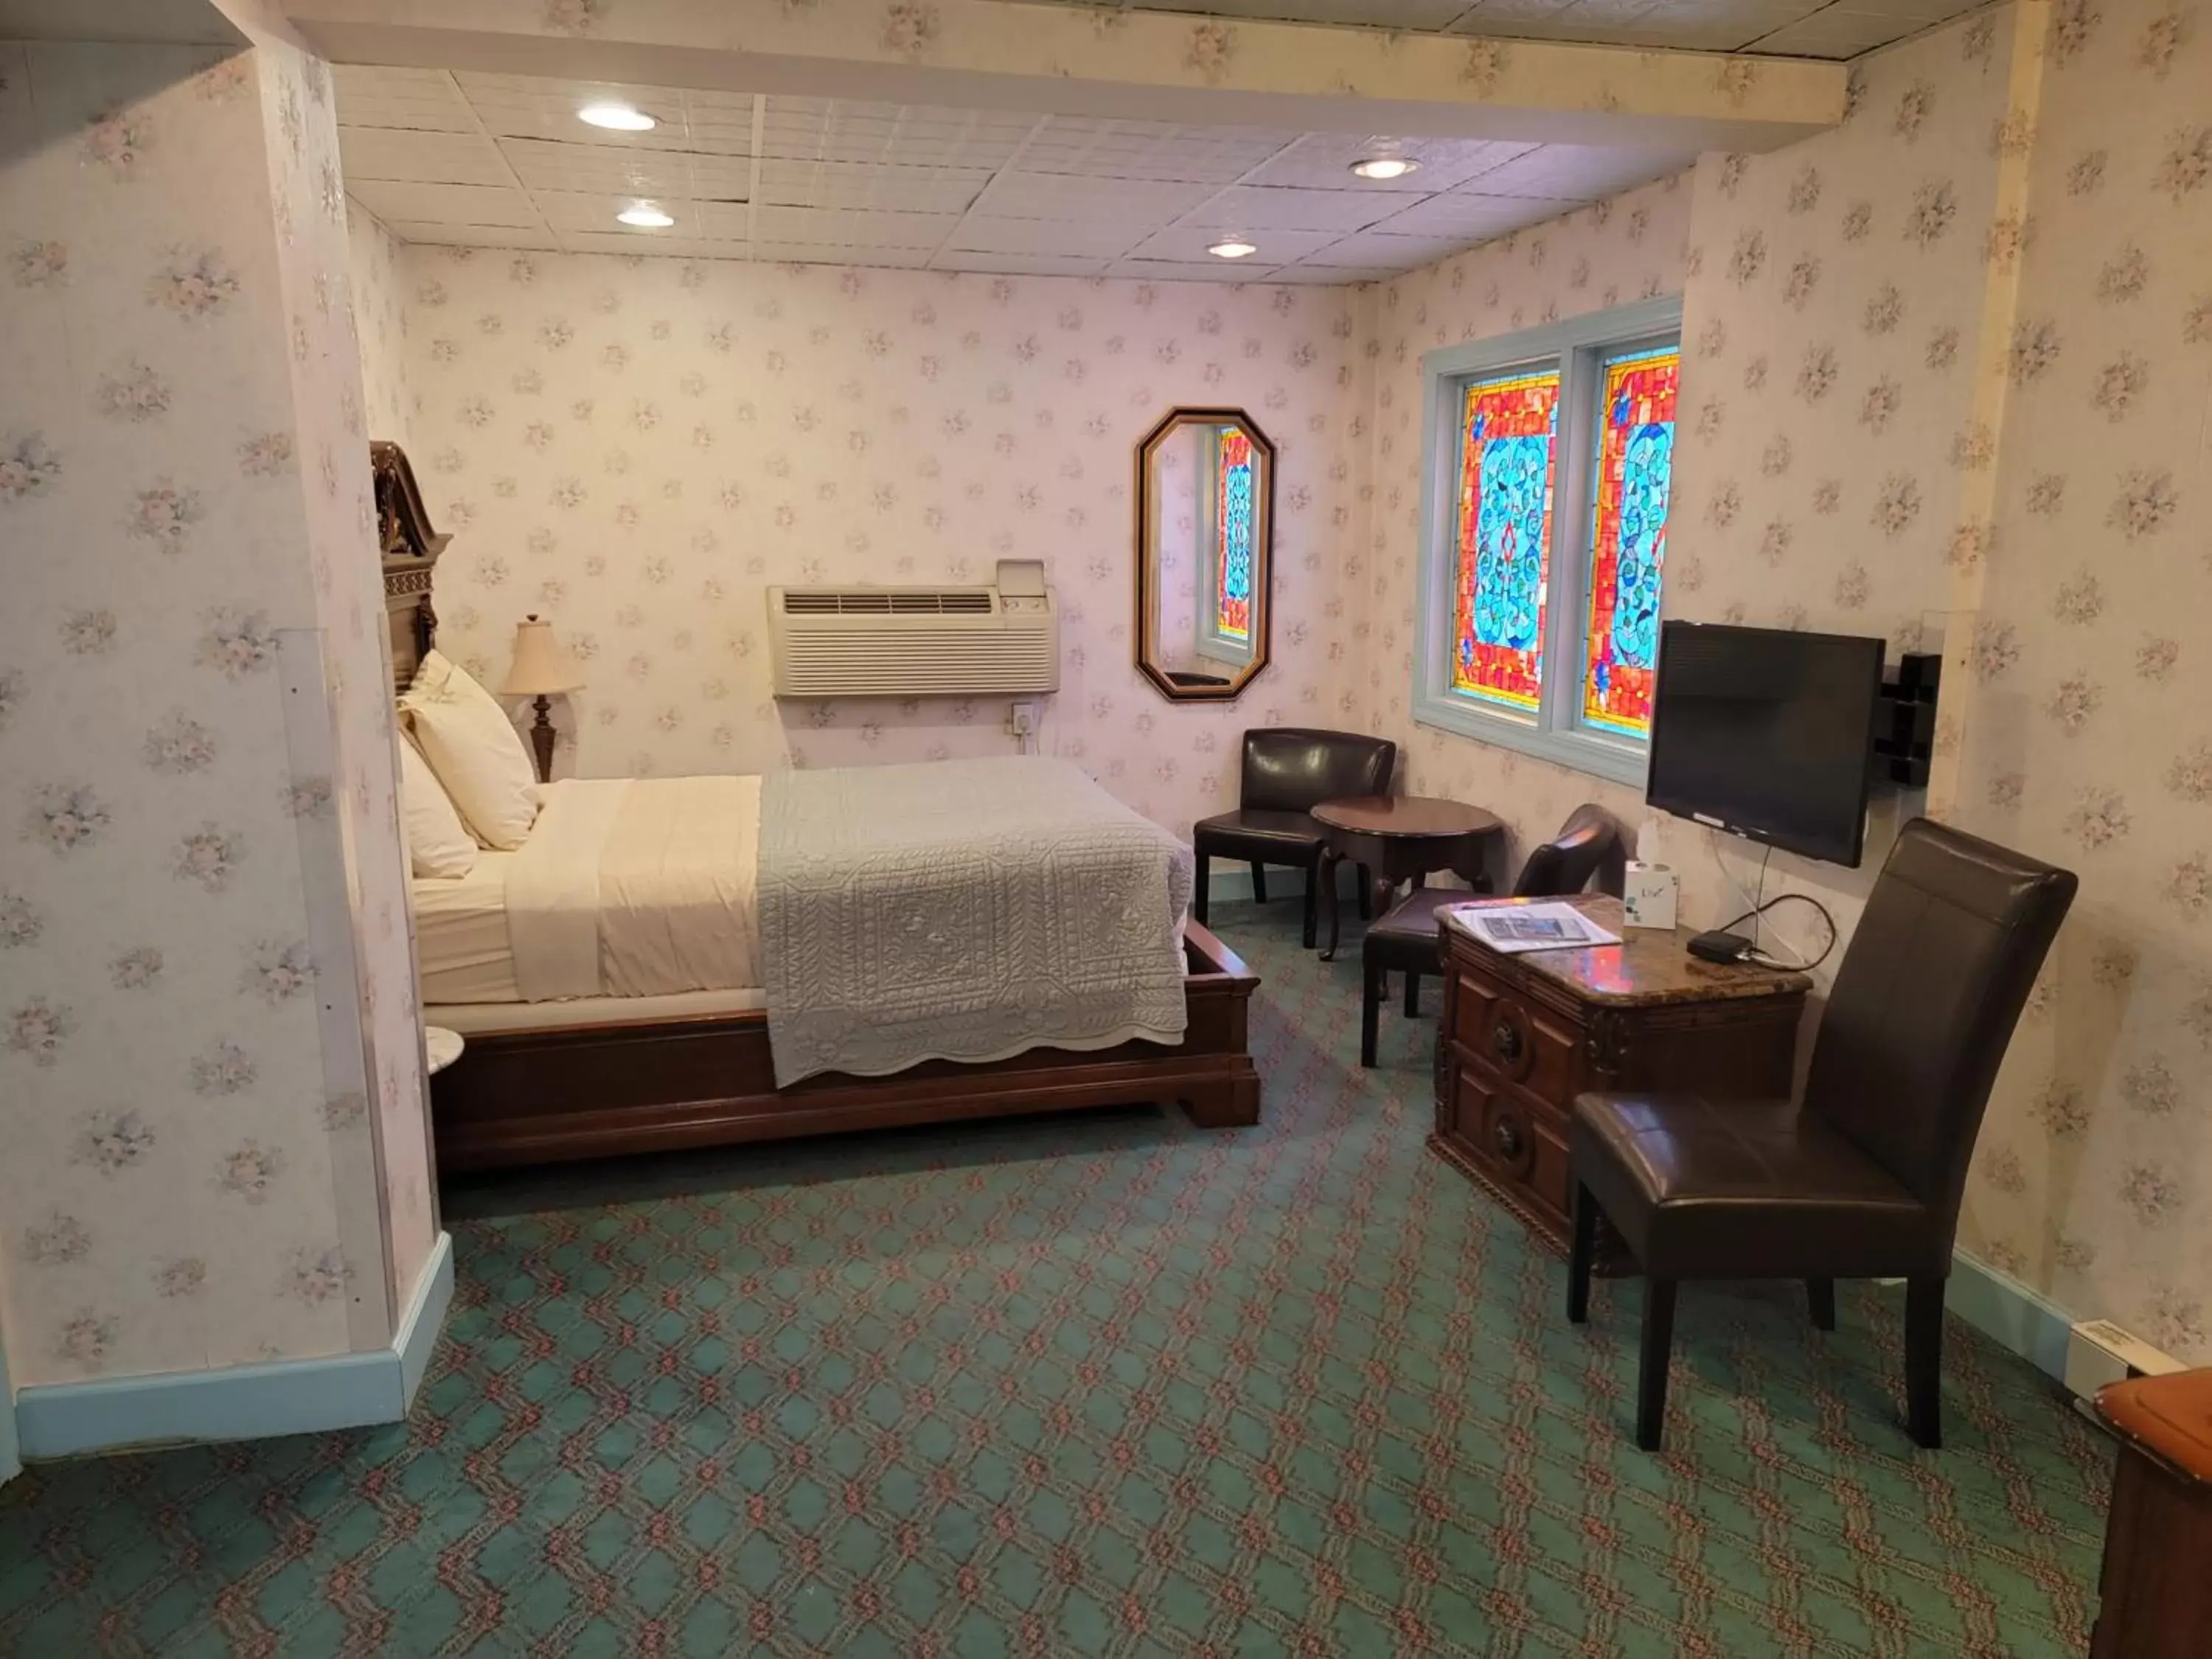 Bedroom in Lowell Inn